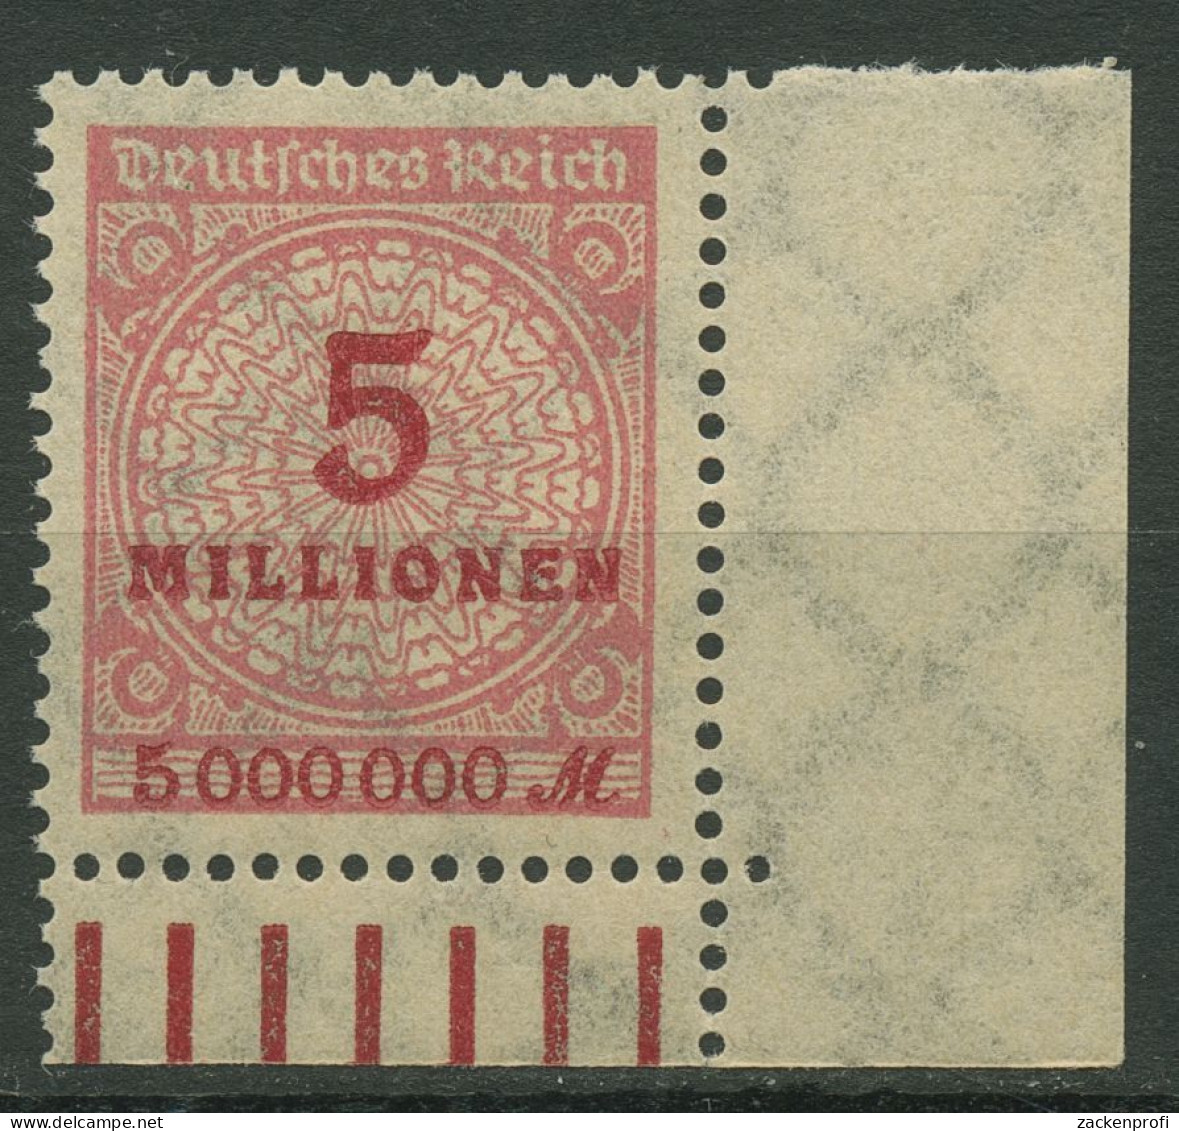 Deutsches Reich Inflation 1923 Korbdeckel Walze 317 AW Ecke Unt. Re. Postfrisch - Unused Stamps